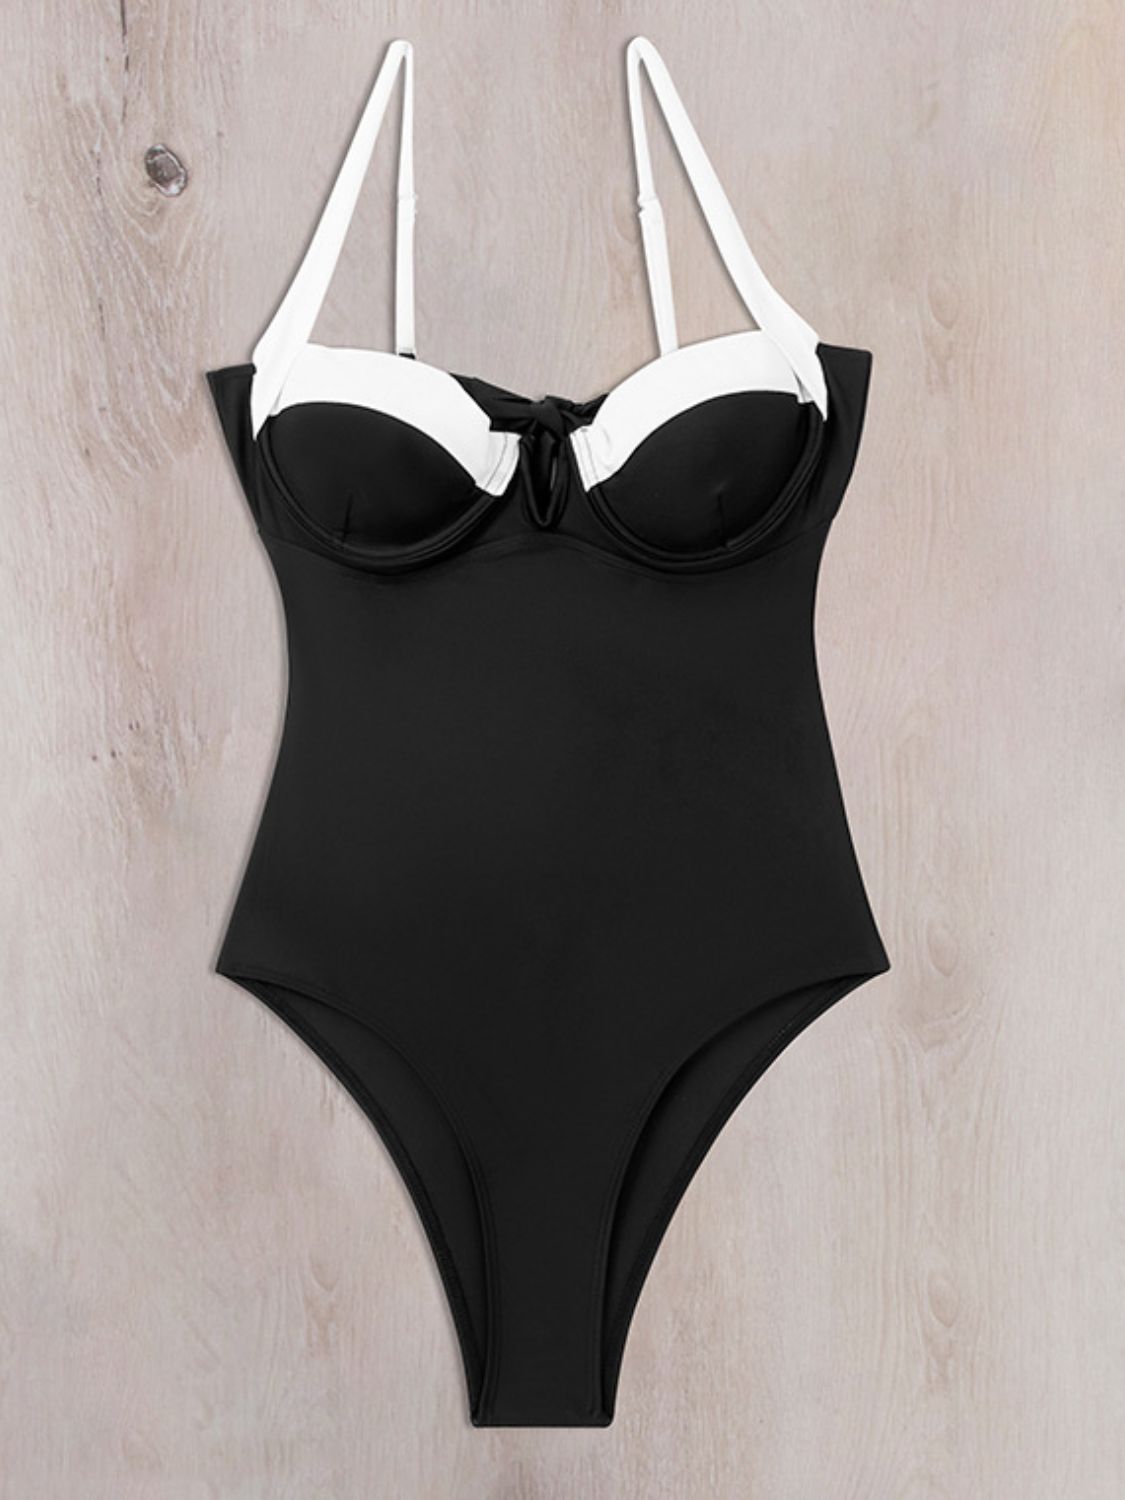 TEEK - Black Tied Adjustable Strap Swimsuit SWIMWEAR TEEK Trend   